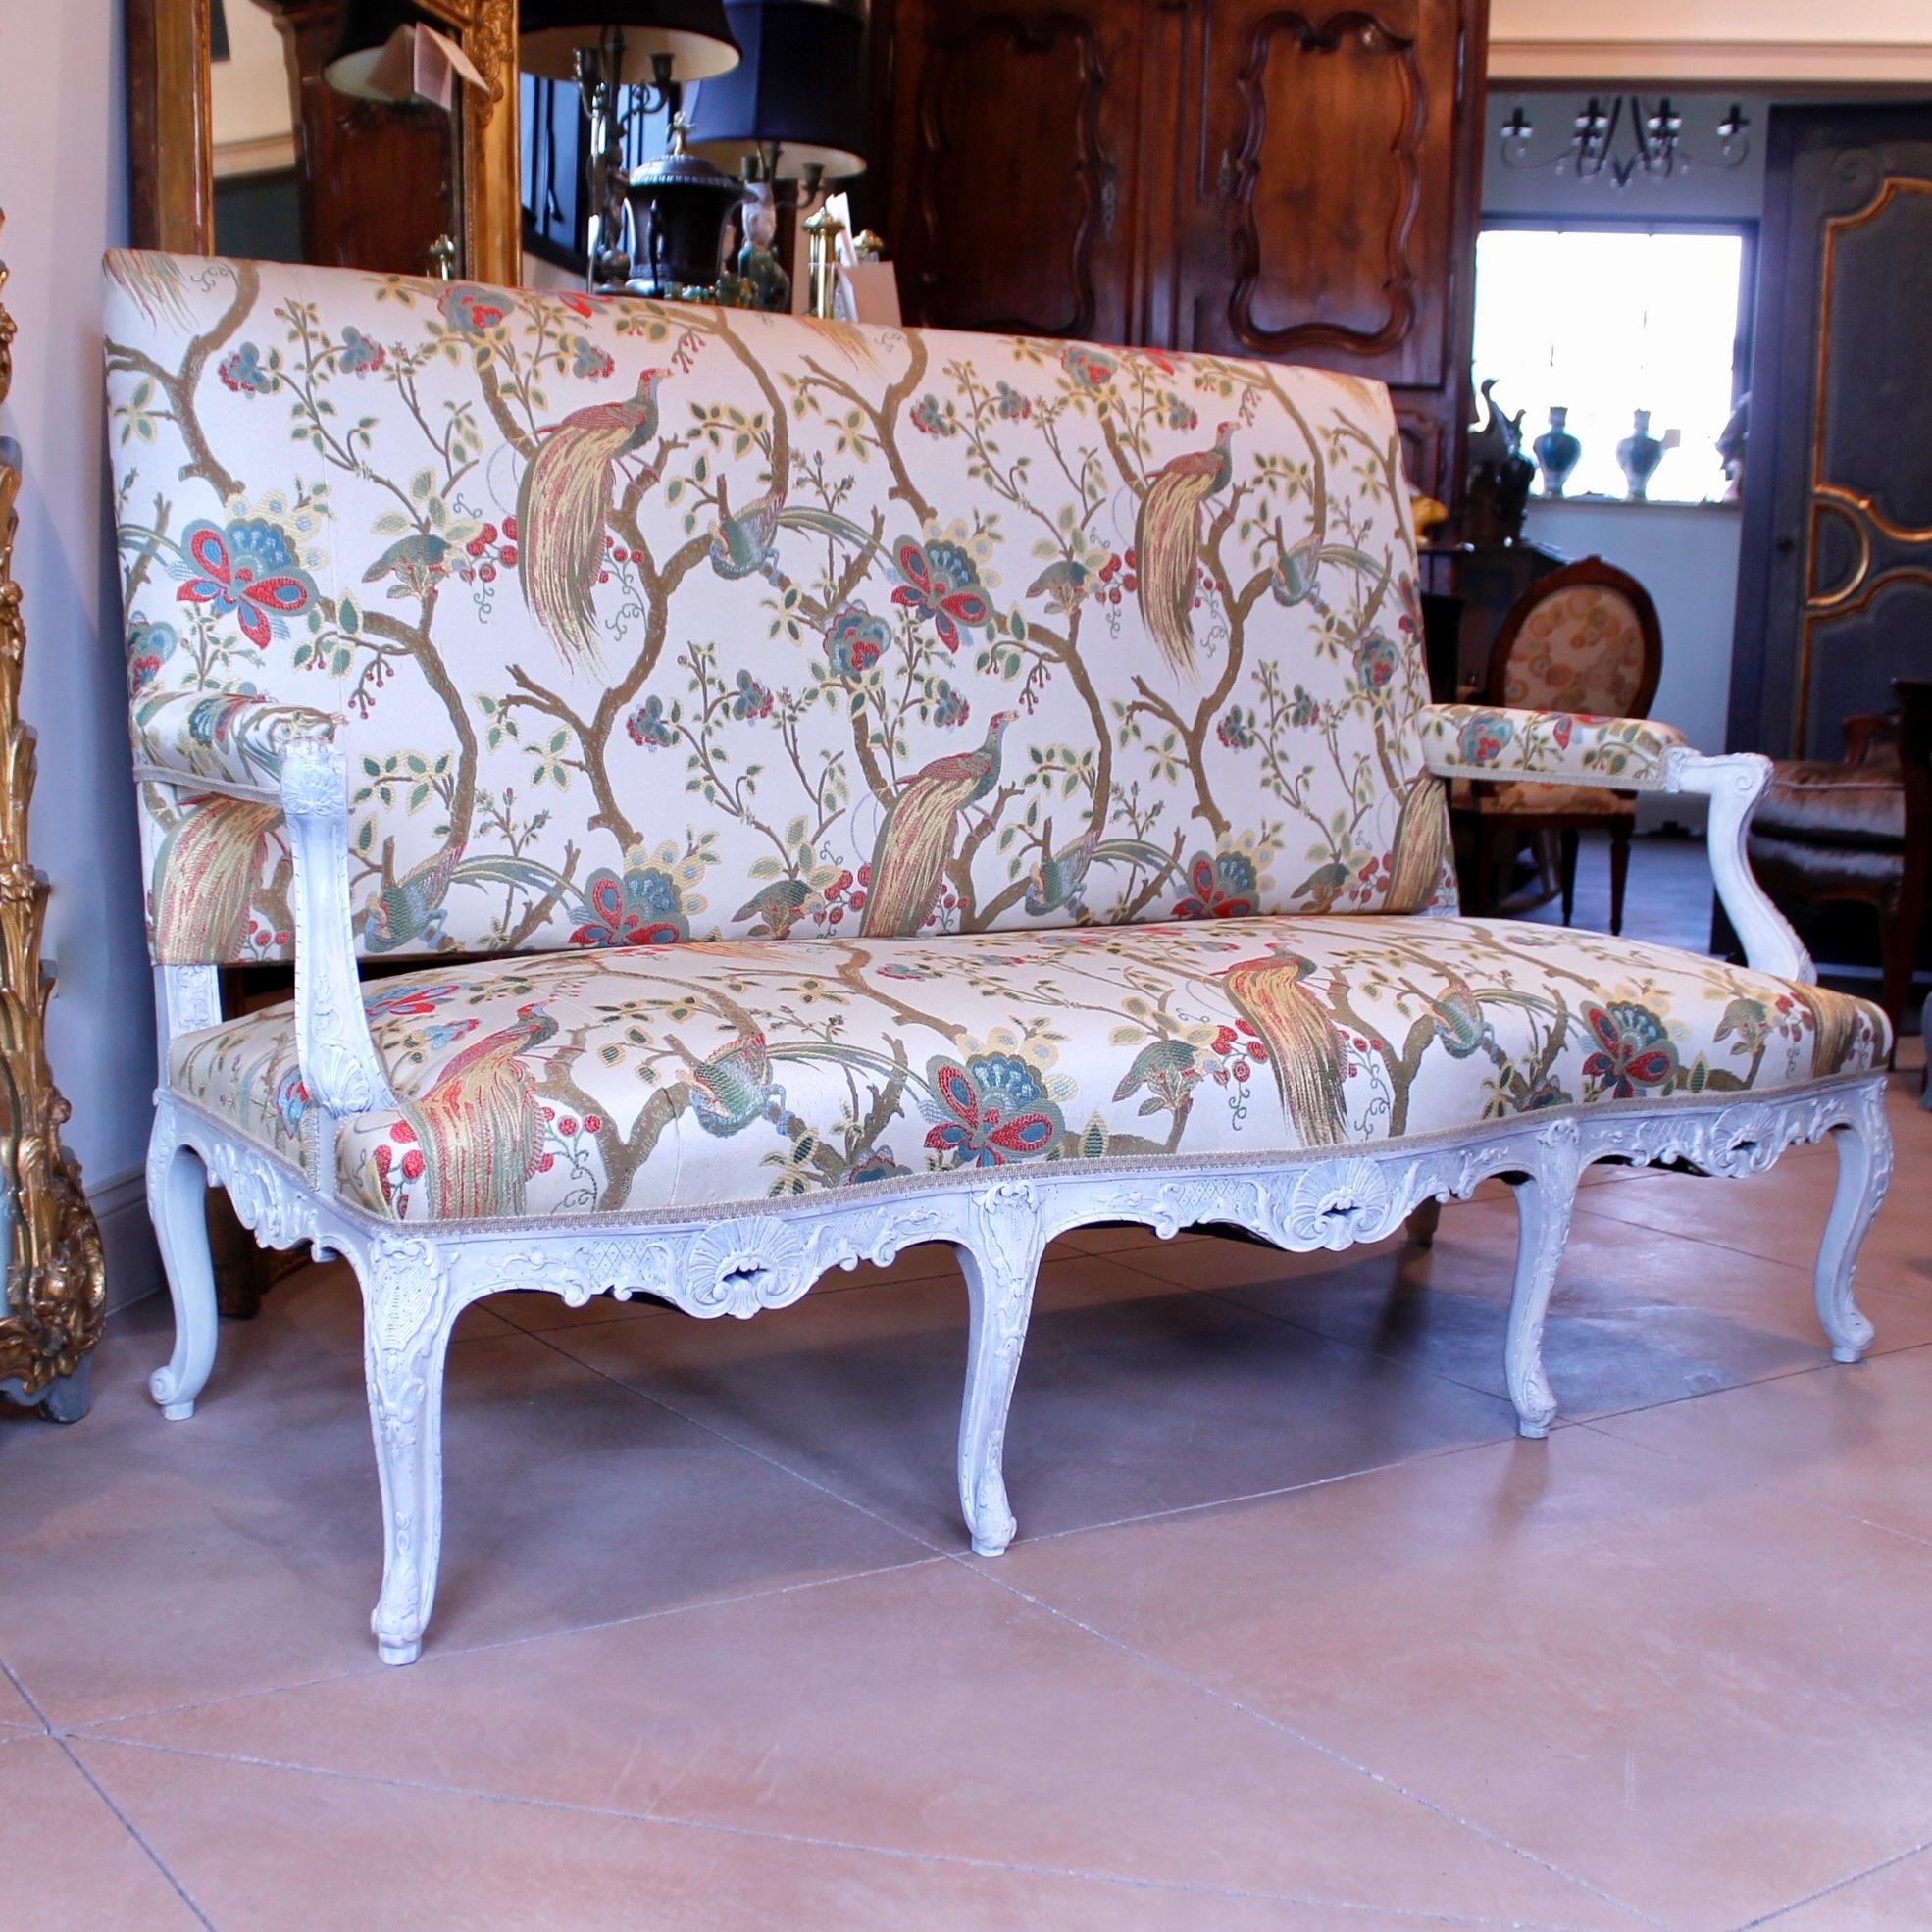 Ein sehr fein geschnitztes Sofa im Régence-Stil aus den 1890er Jahren, cremefarben lackiert und frisch gepolstert mit einem gewebten Stoff aus dem 18. Jahrhundert mit Zweigen und Fasanen. Die Schnitzerei ist scharf und sehr detailliert, und die